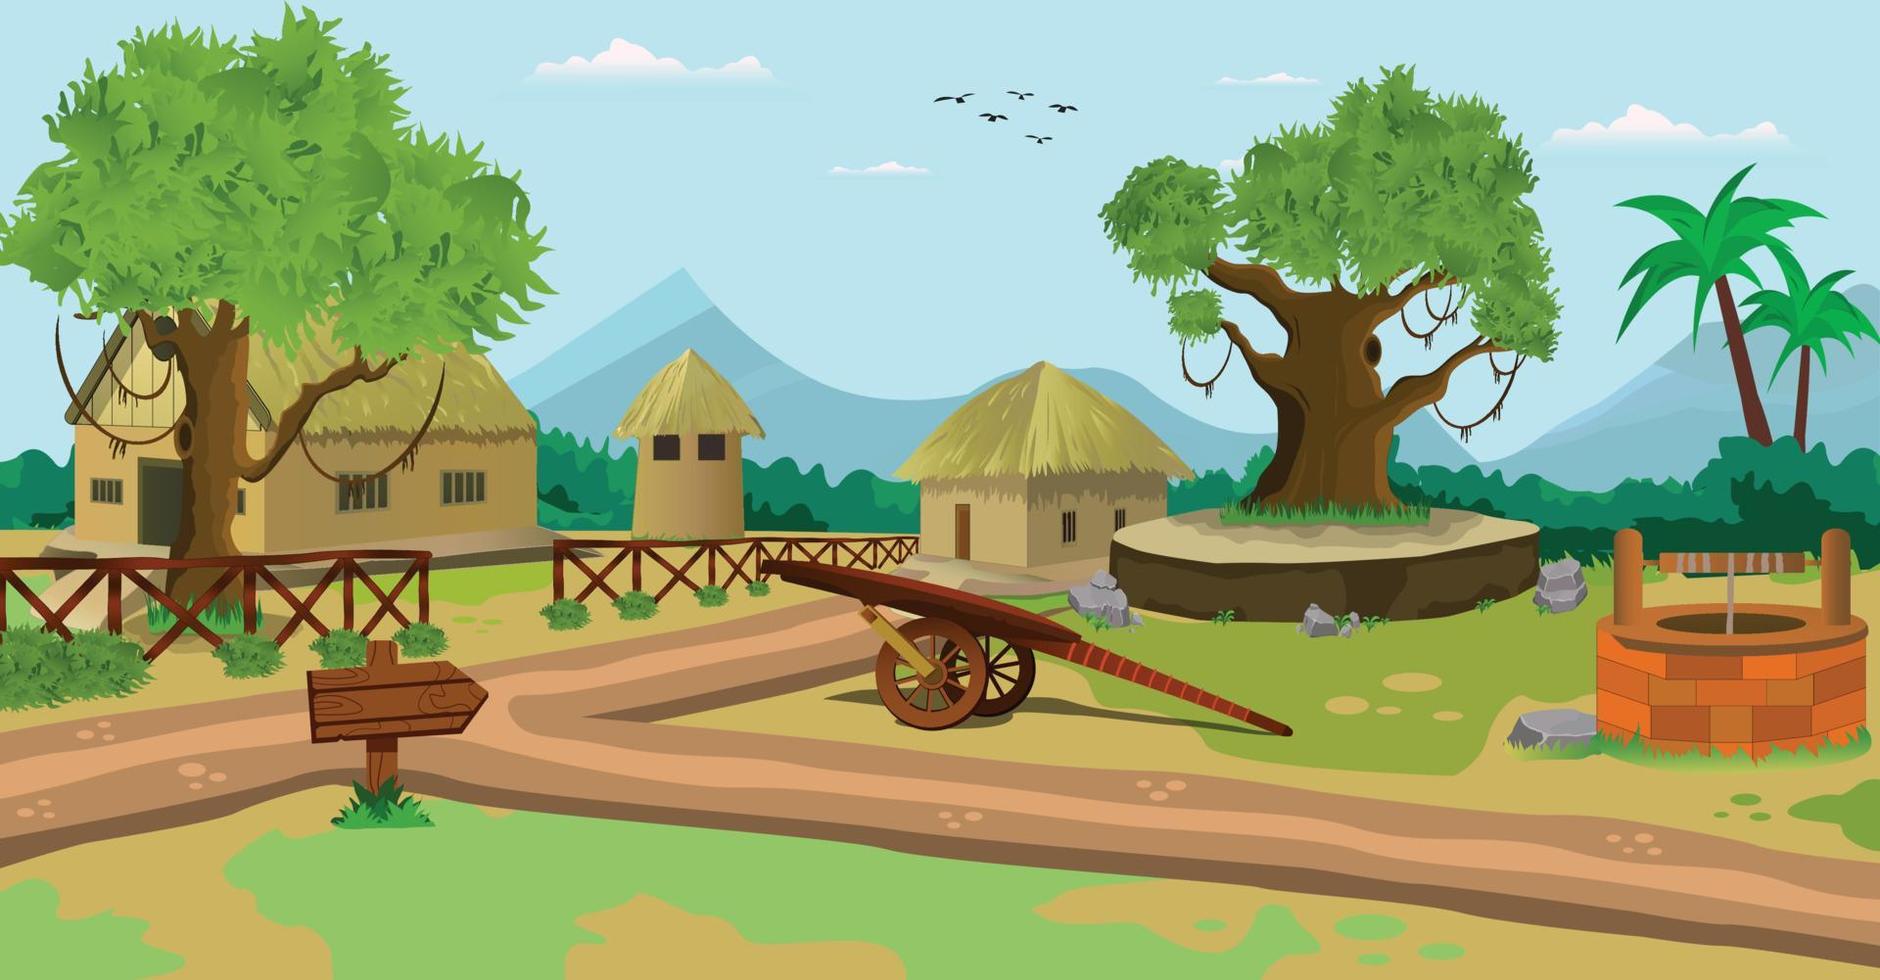 ilustração vetorial de cena de vila de fundo dos desenhos animados com cidade de casas antigas. vetor